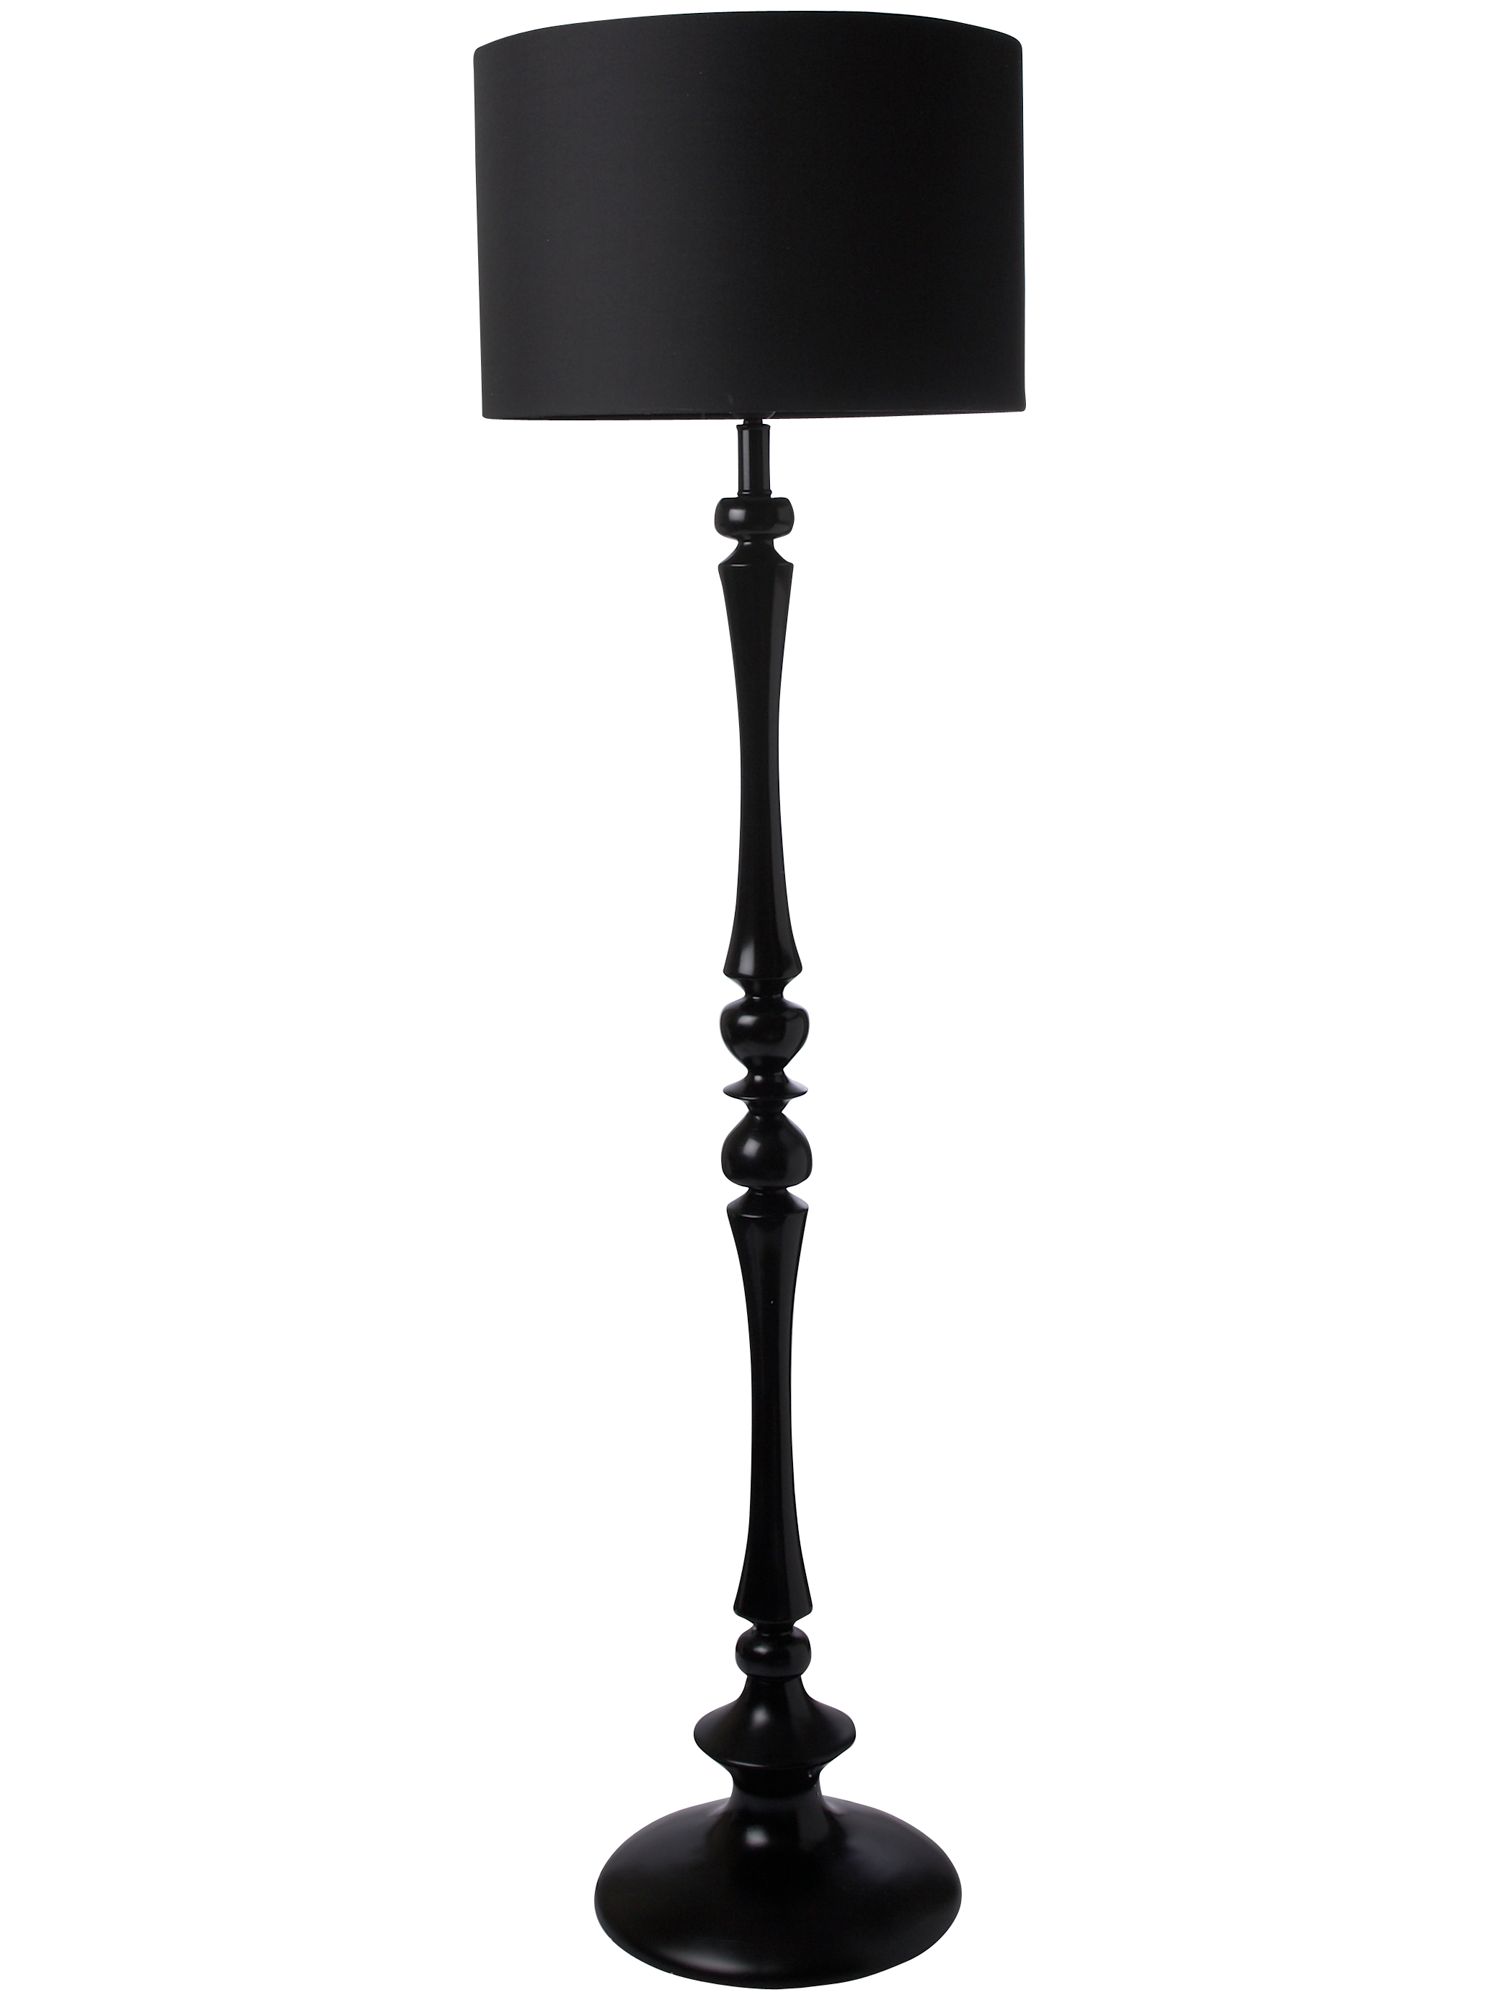 10 reasons to buy Black tall lamp Warisan Lighting